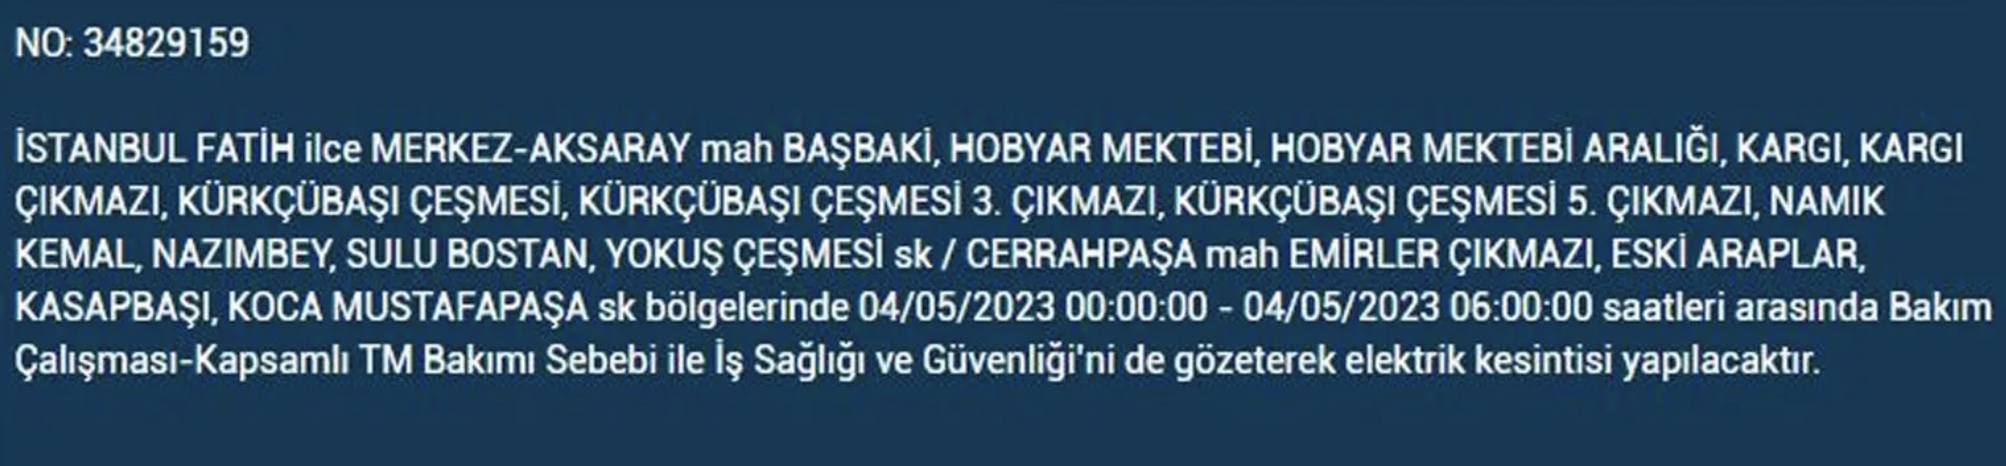 BEDAŞ, 4 Mayıs Perşembe elektrik kesintilerinin yapılacağı ilçeleri açıkladı